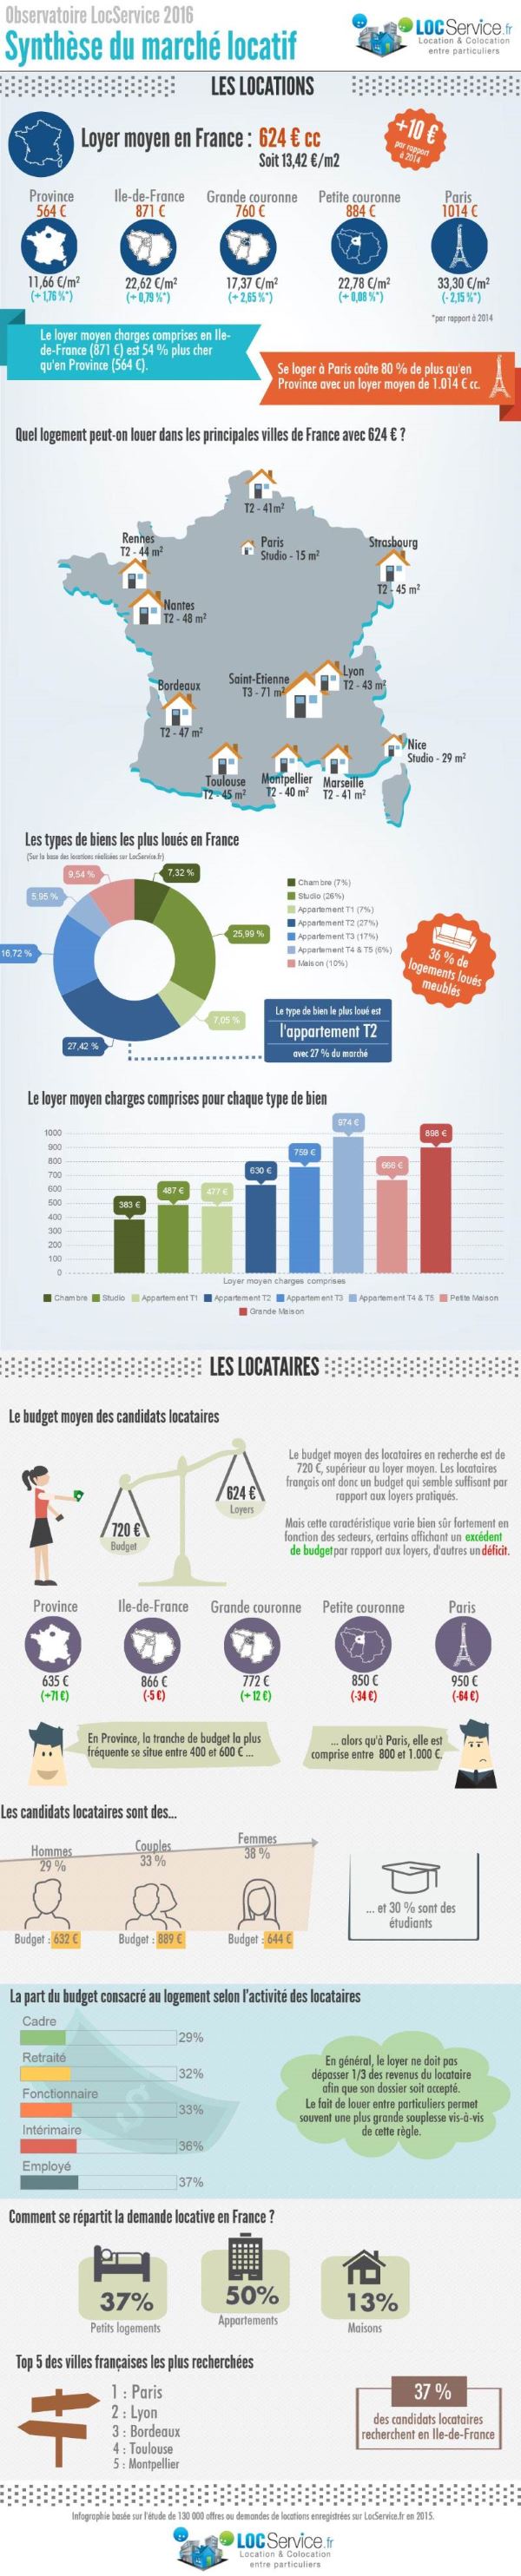 Infographie - Observatoire LocService 2016 sur le marché locatif français